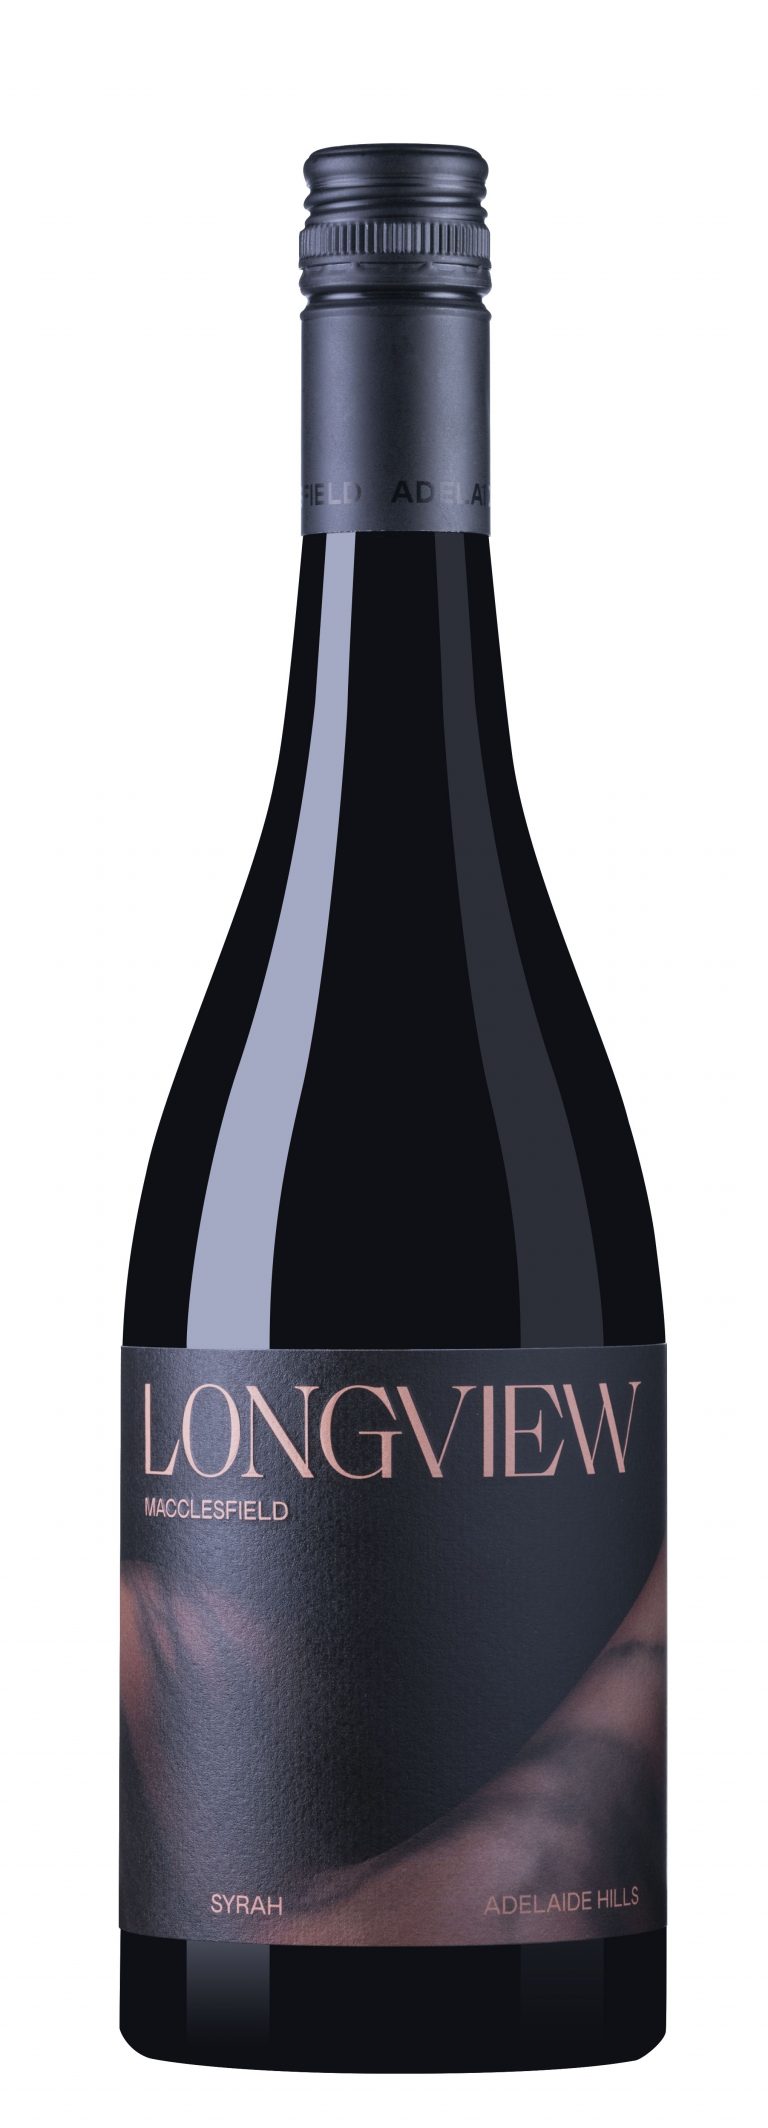 Longview label no vintage